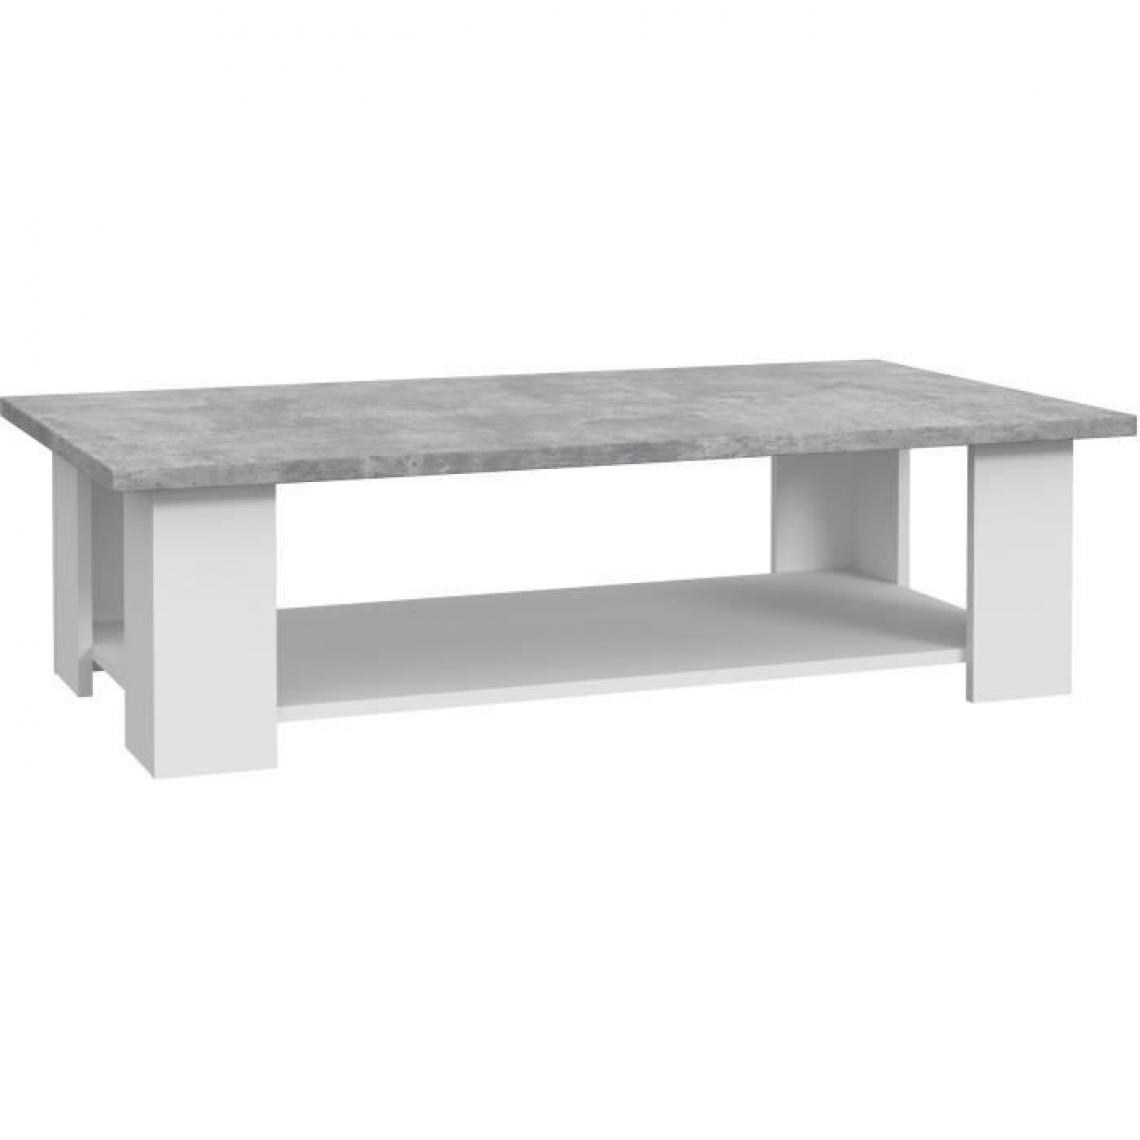 Cstore - PILVI - table basse rectangulaire - blanc et béton gris clair - l 110xp 60xh 31 cm - Tables basses